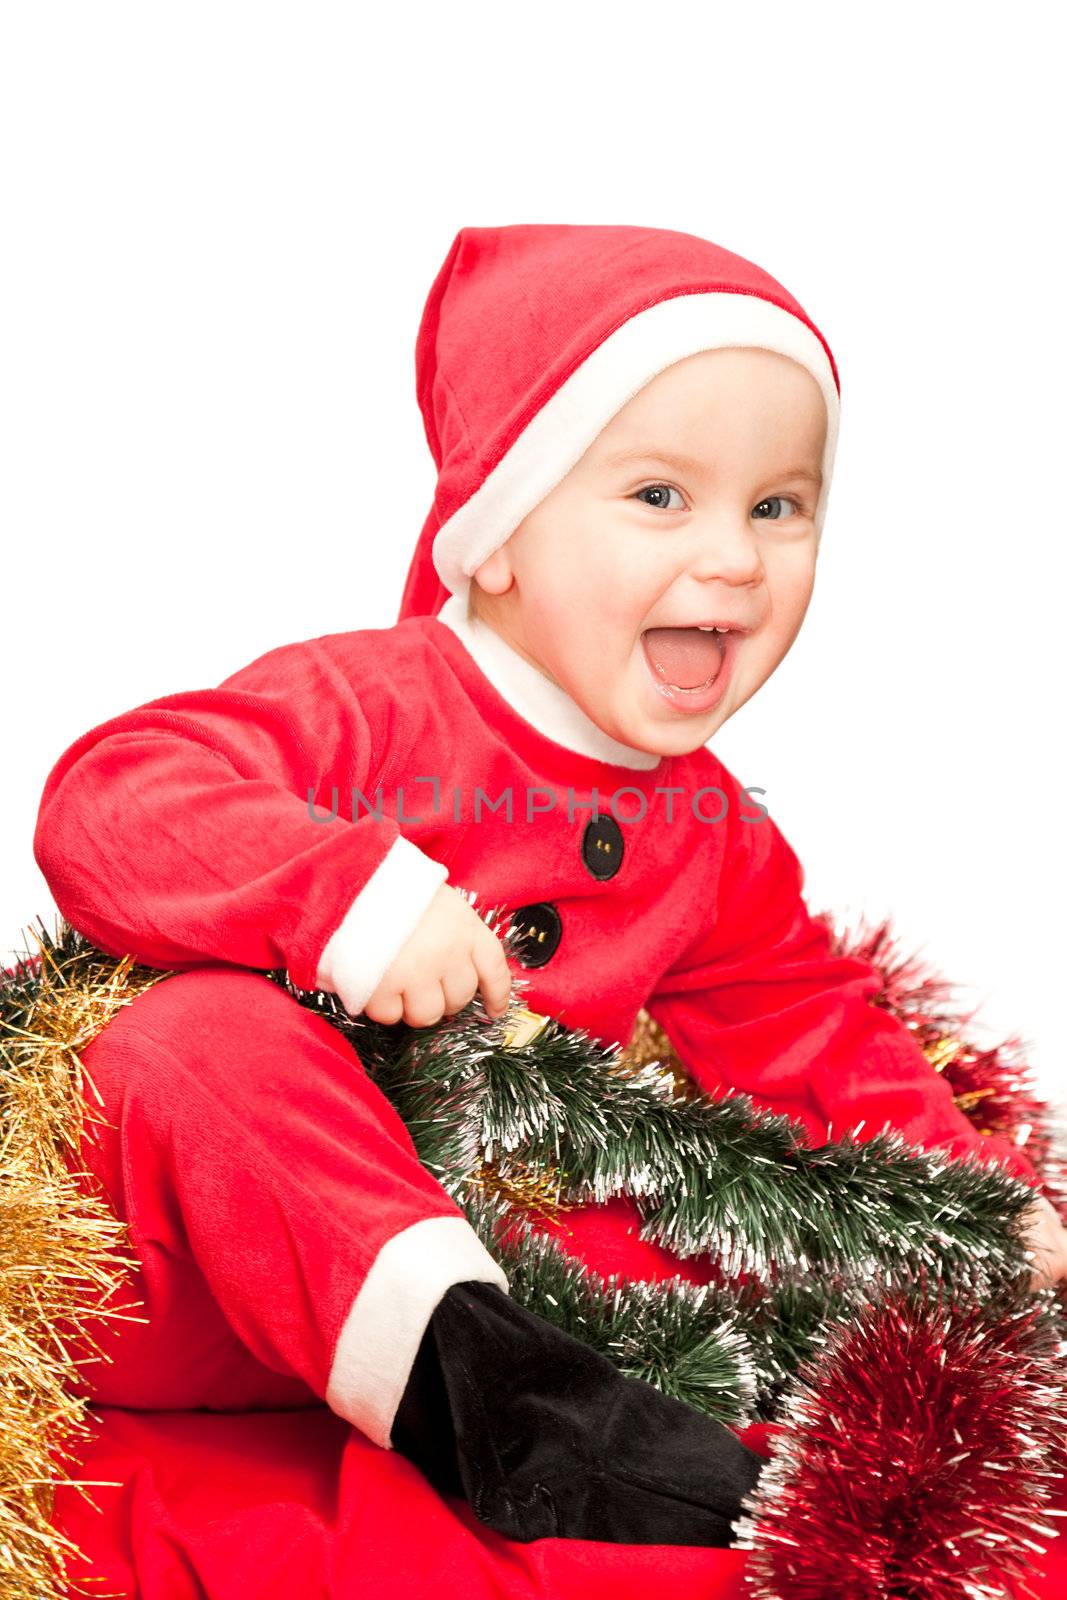 Baby wearing Santa suit by naumoid